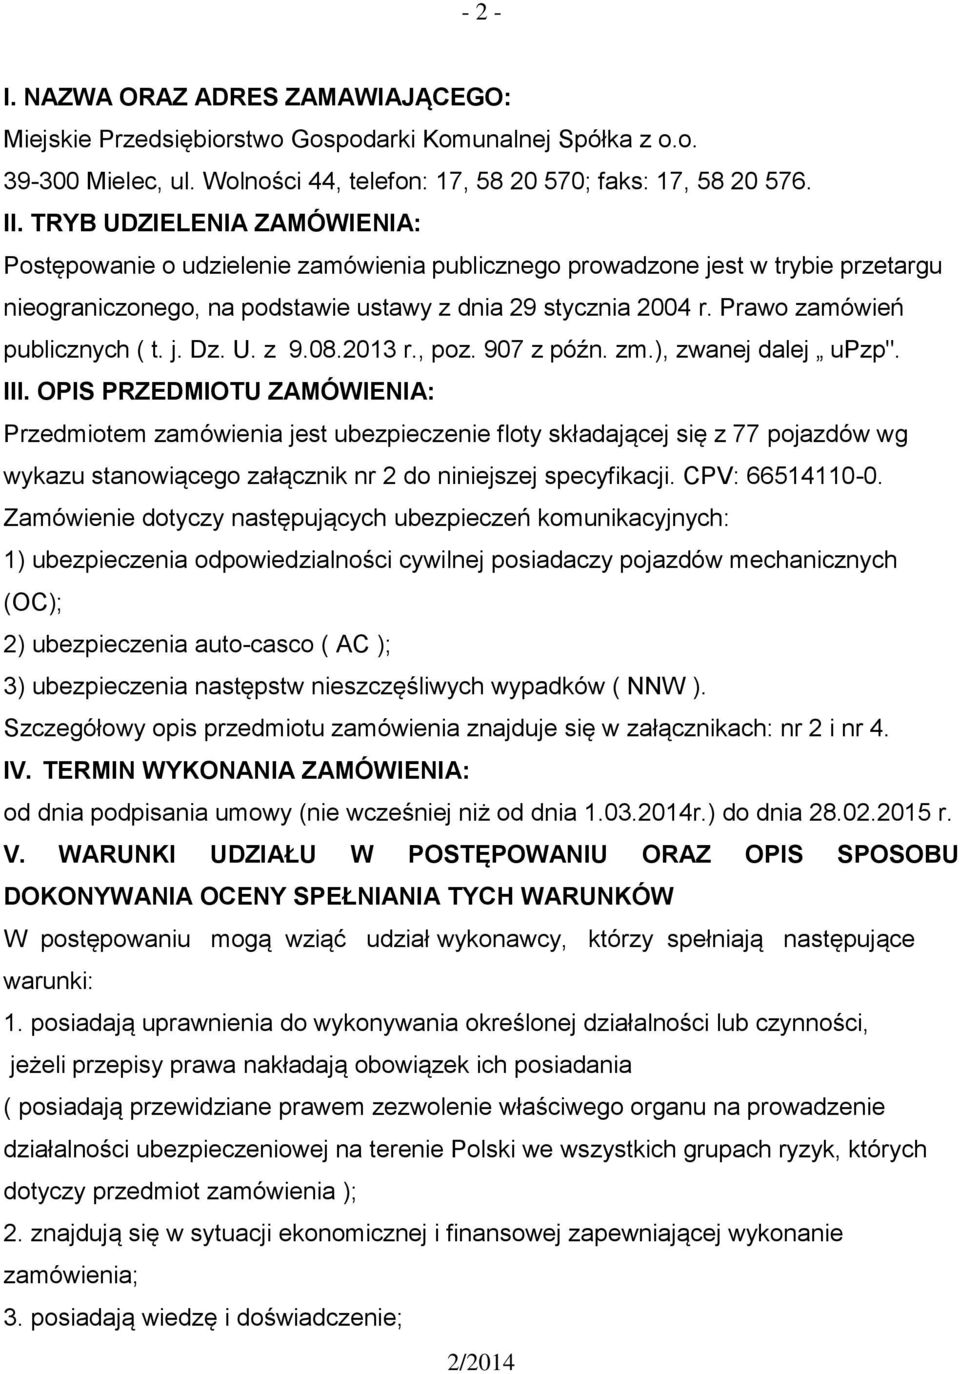 Prawo zamówień publicznych ( t. j. Dz. U. z 9.08.2013 r., poz. 907 z późn. zm.), zwanej dalej upzp". III.